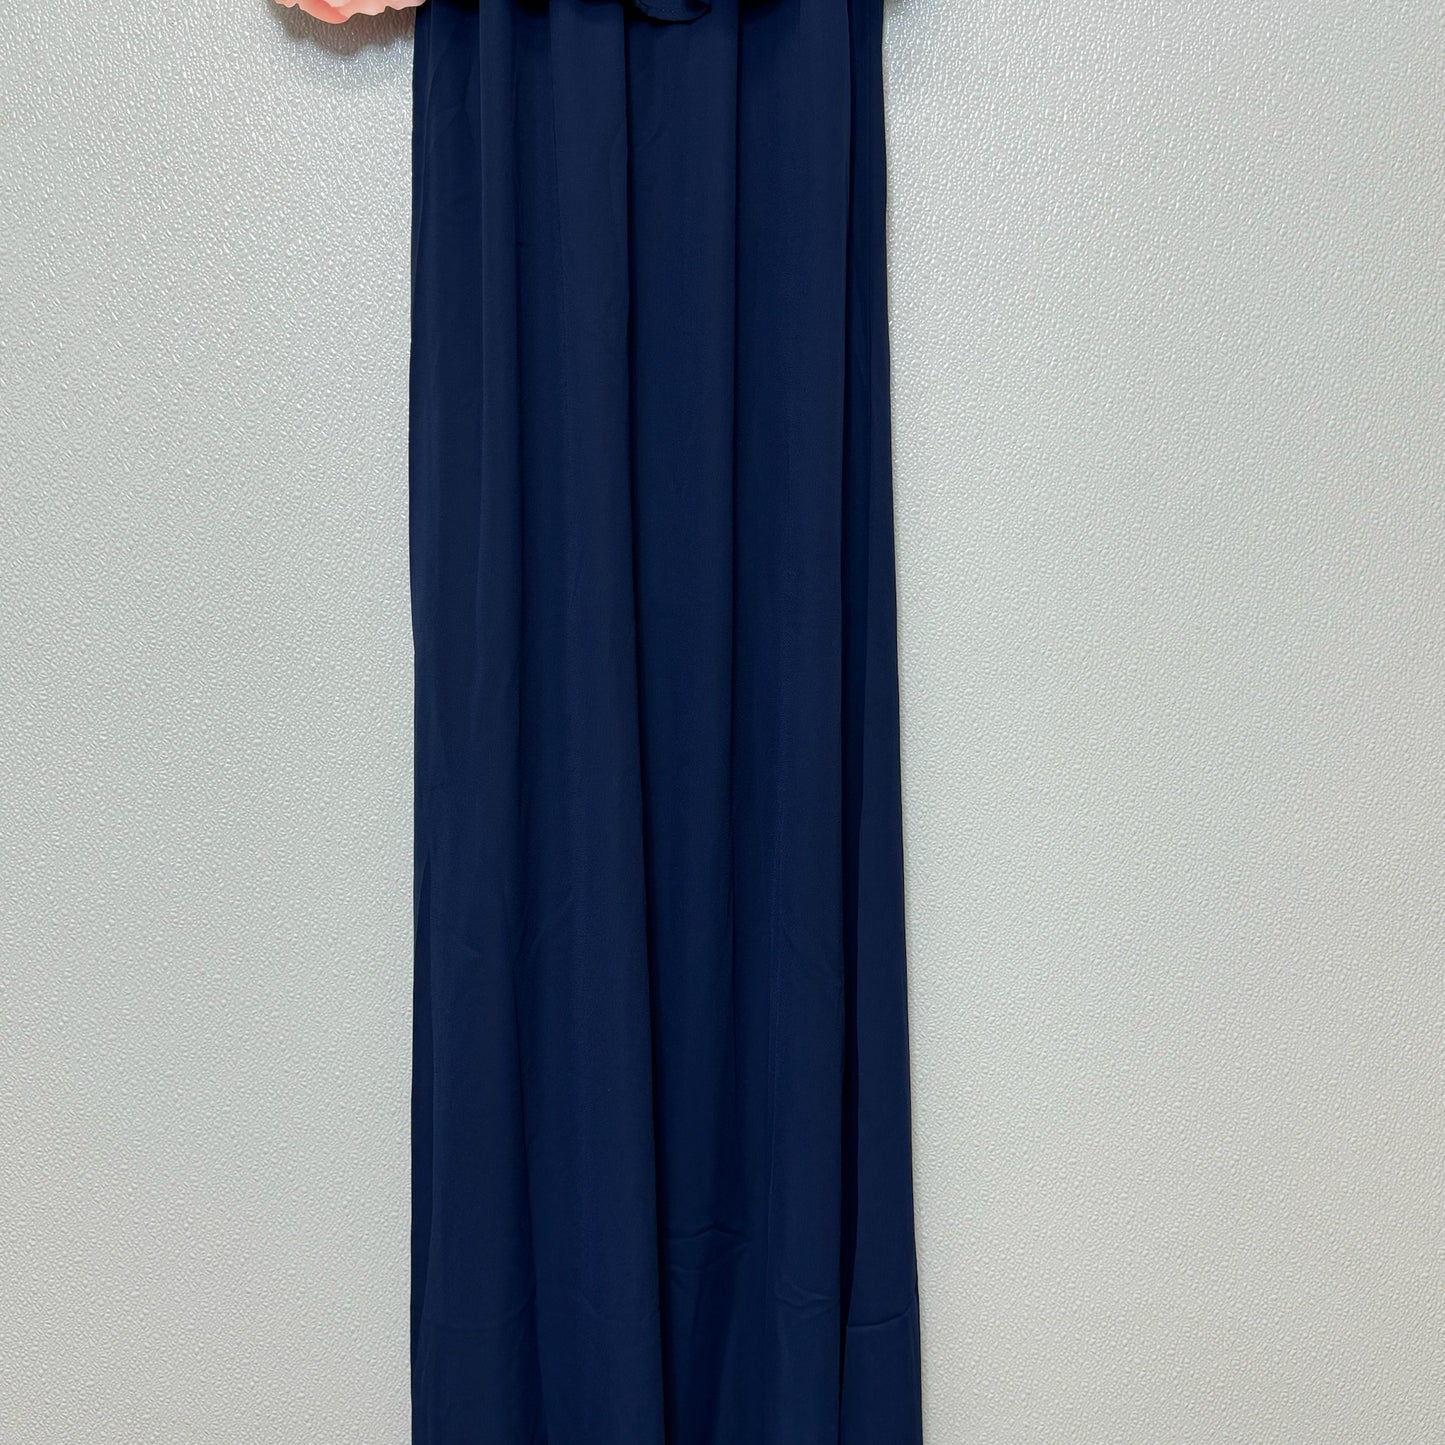 Dress Casual Maxi By Mumu  Size: Xs